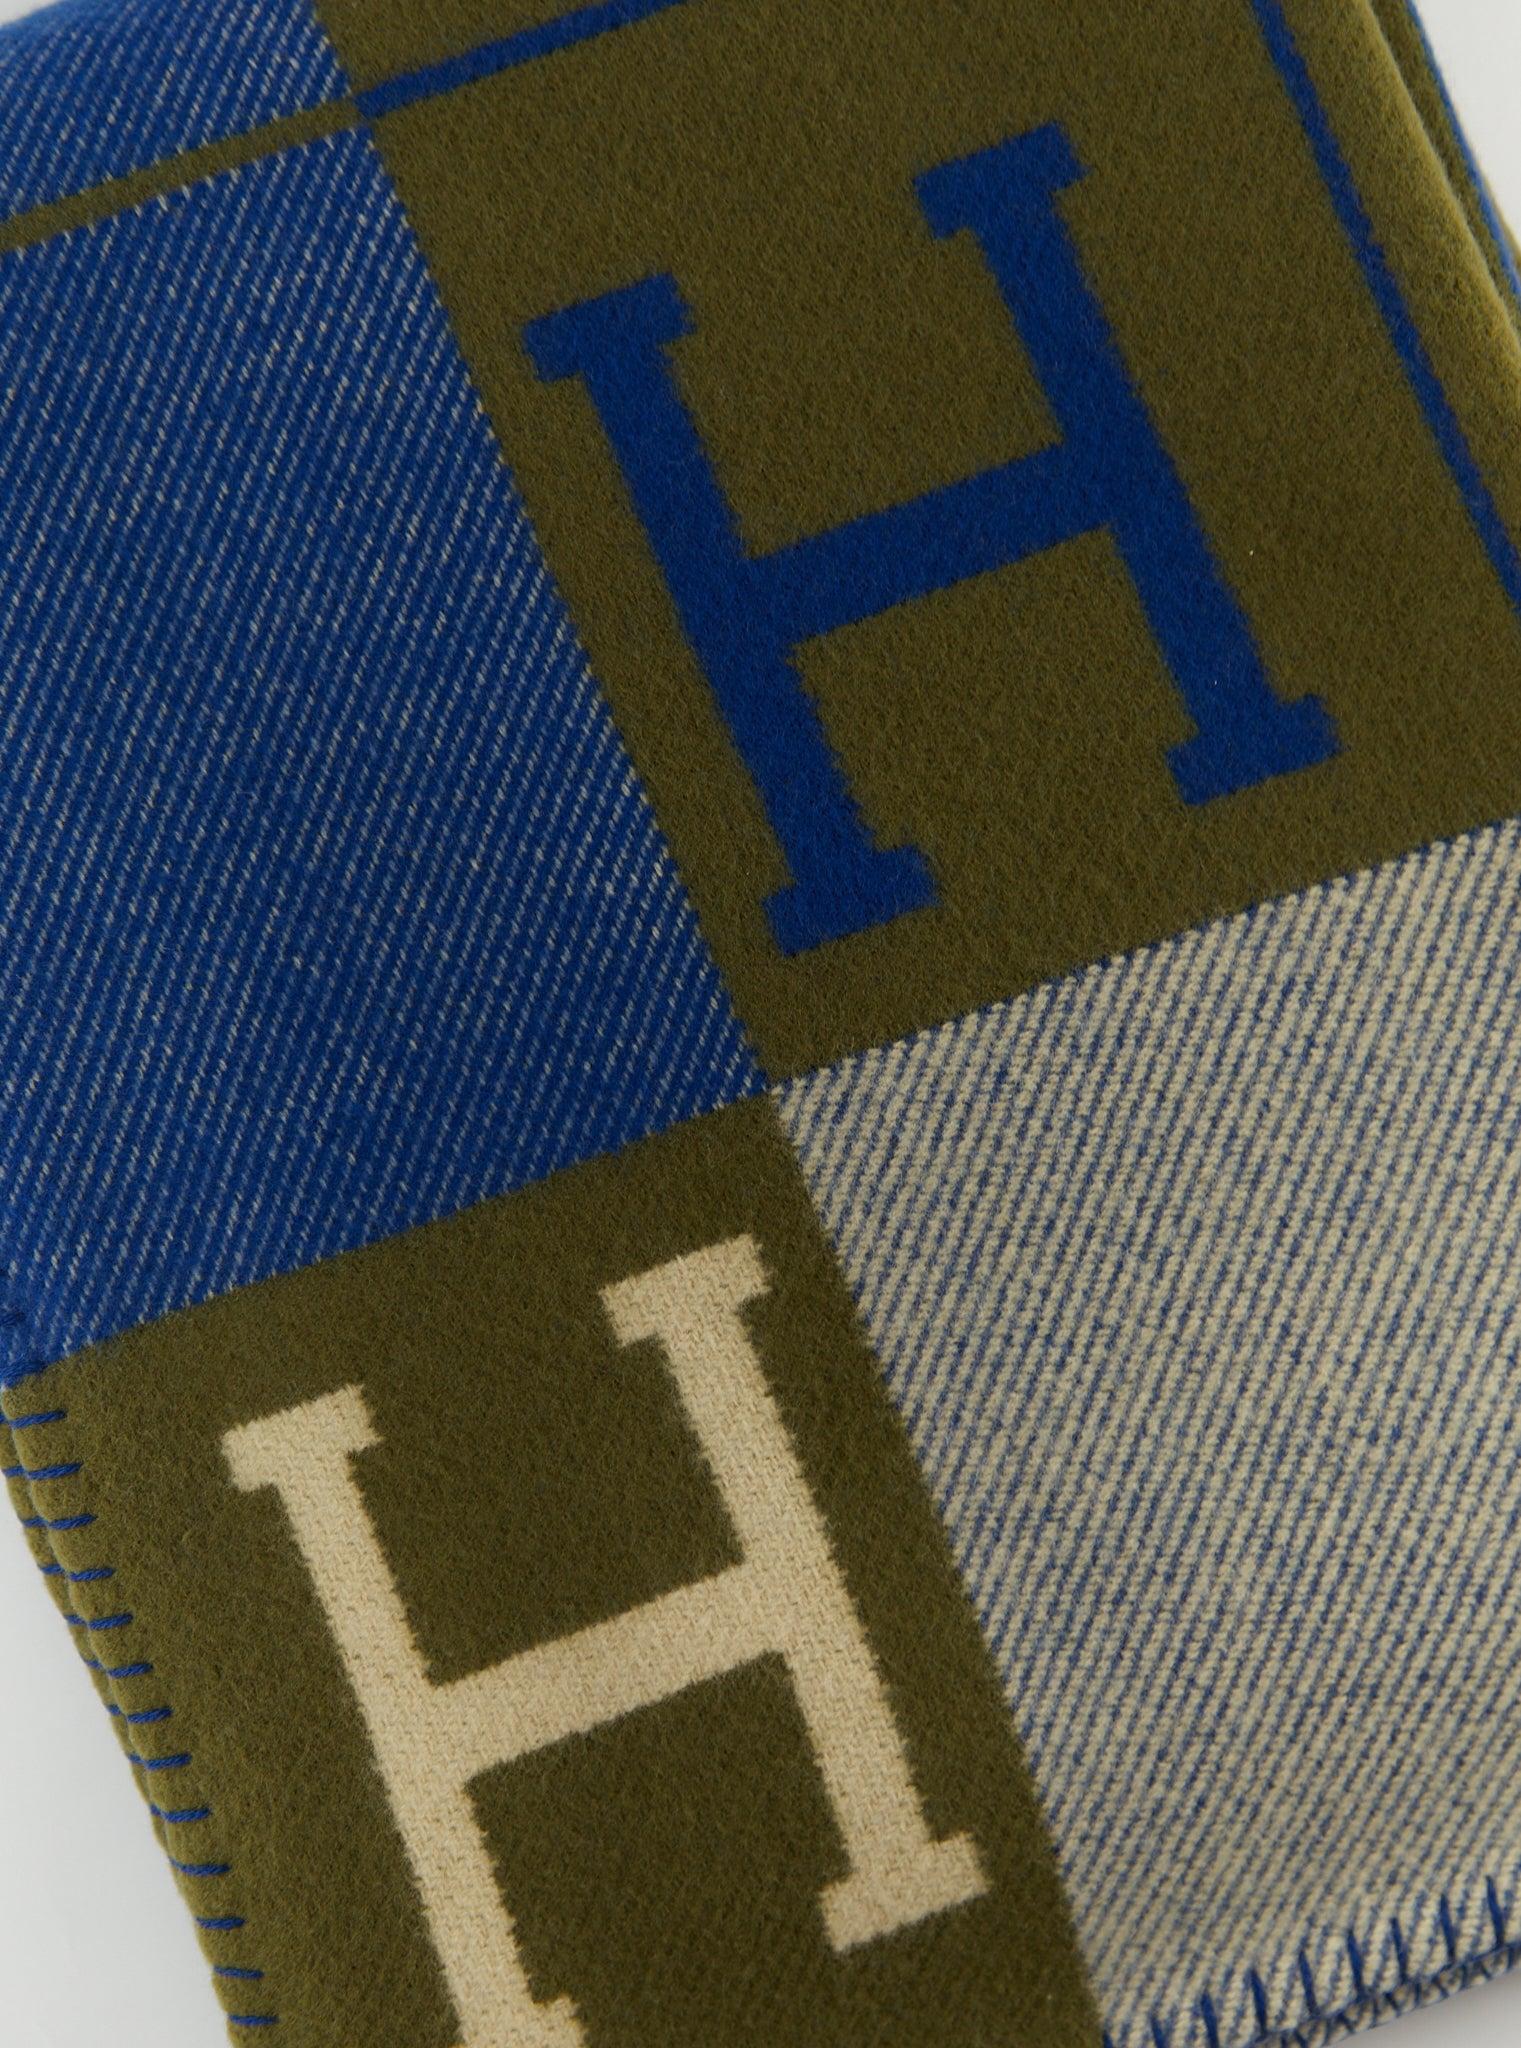 Hermès Avalon III Bettdecke aus Merinowolle und Kaschmir (90% Merinowolle, 10% Kaschmir)

Marin & Khaki

Hergestellt in Großbritannien

Abmessungen: L 135 x H 170 cm 

